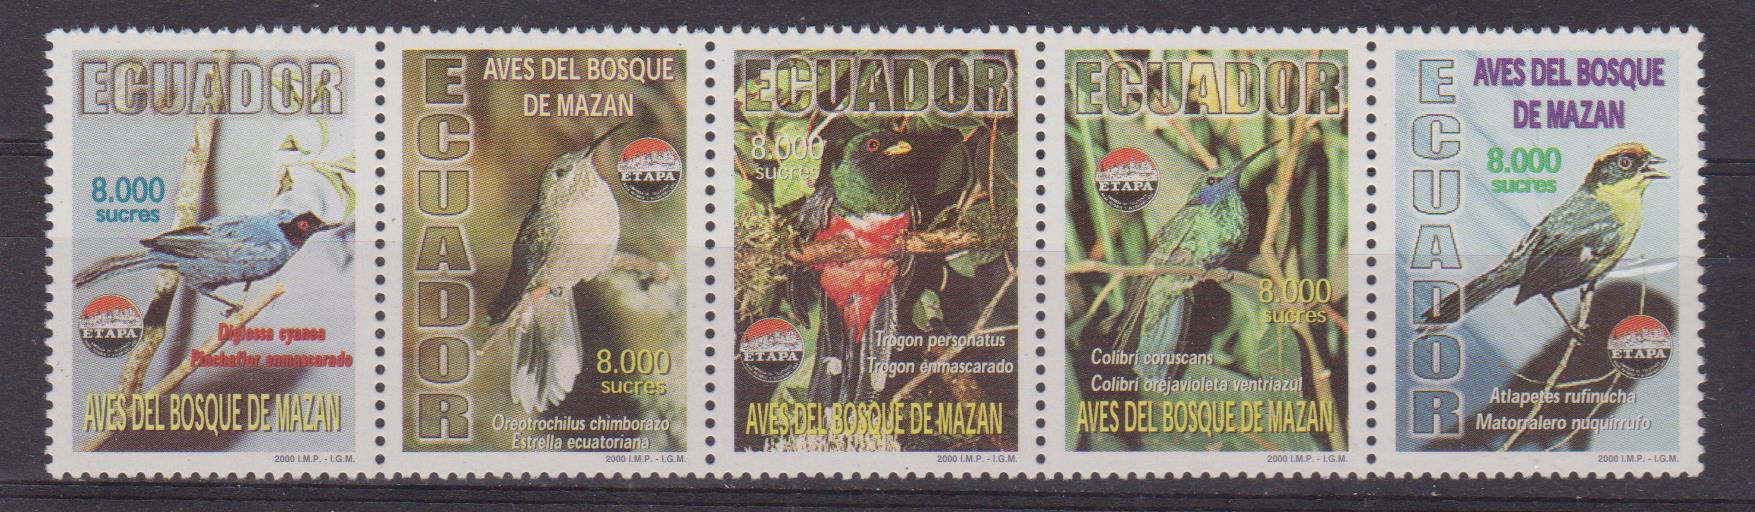 Ecuador fauna 002